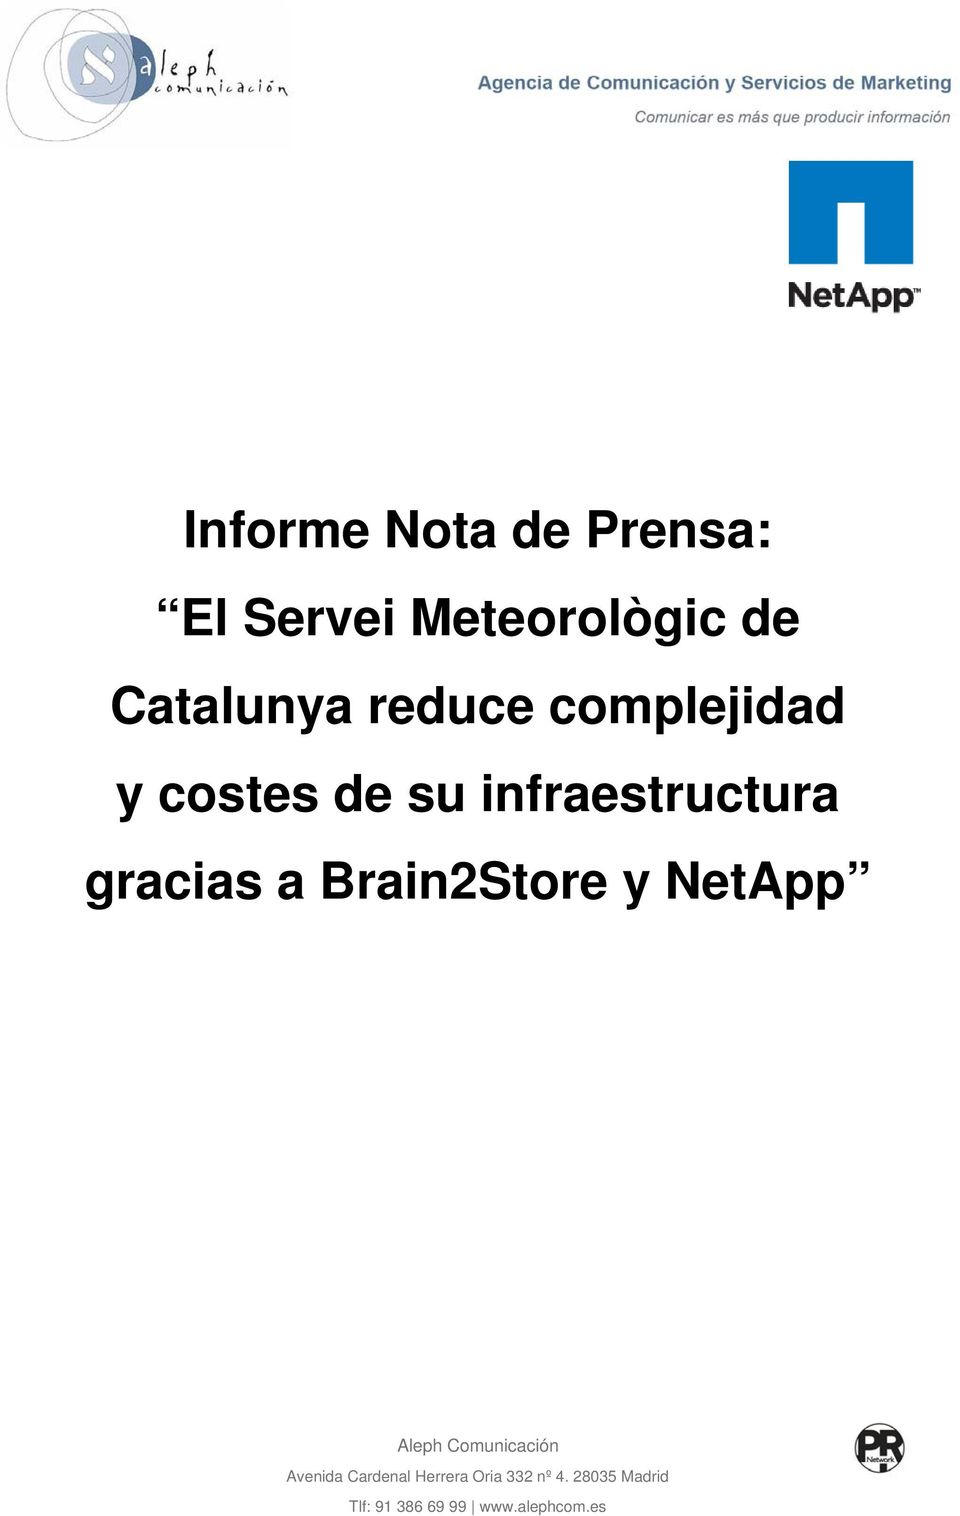 Brain2Store y NetApp Aleph Comunicación Avenida Cardenal